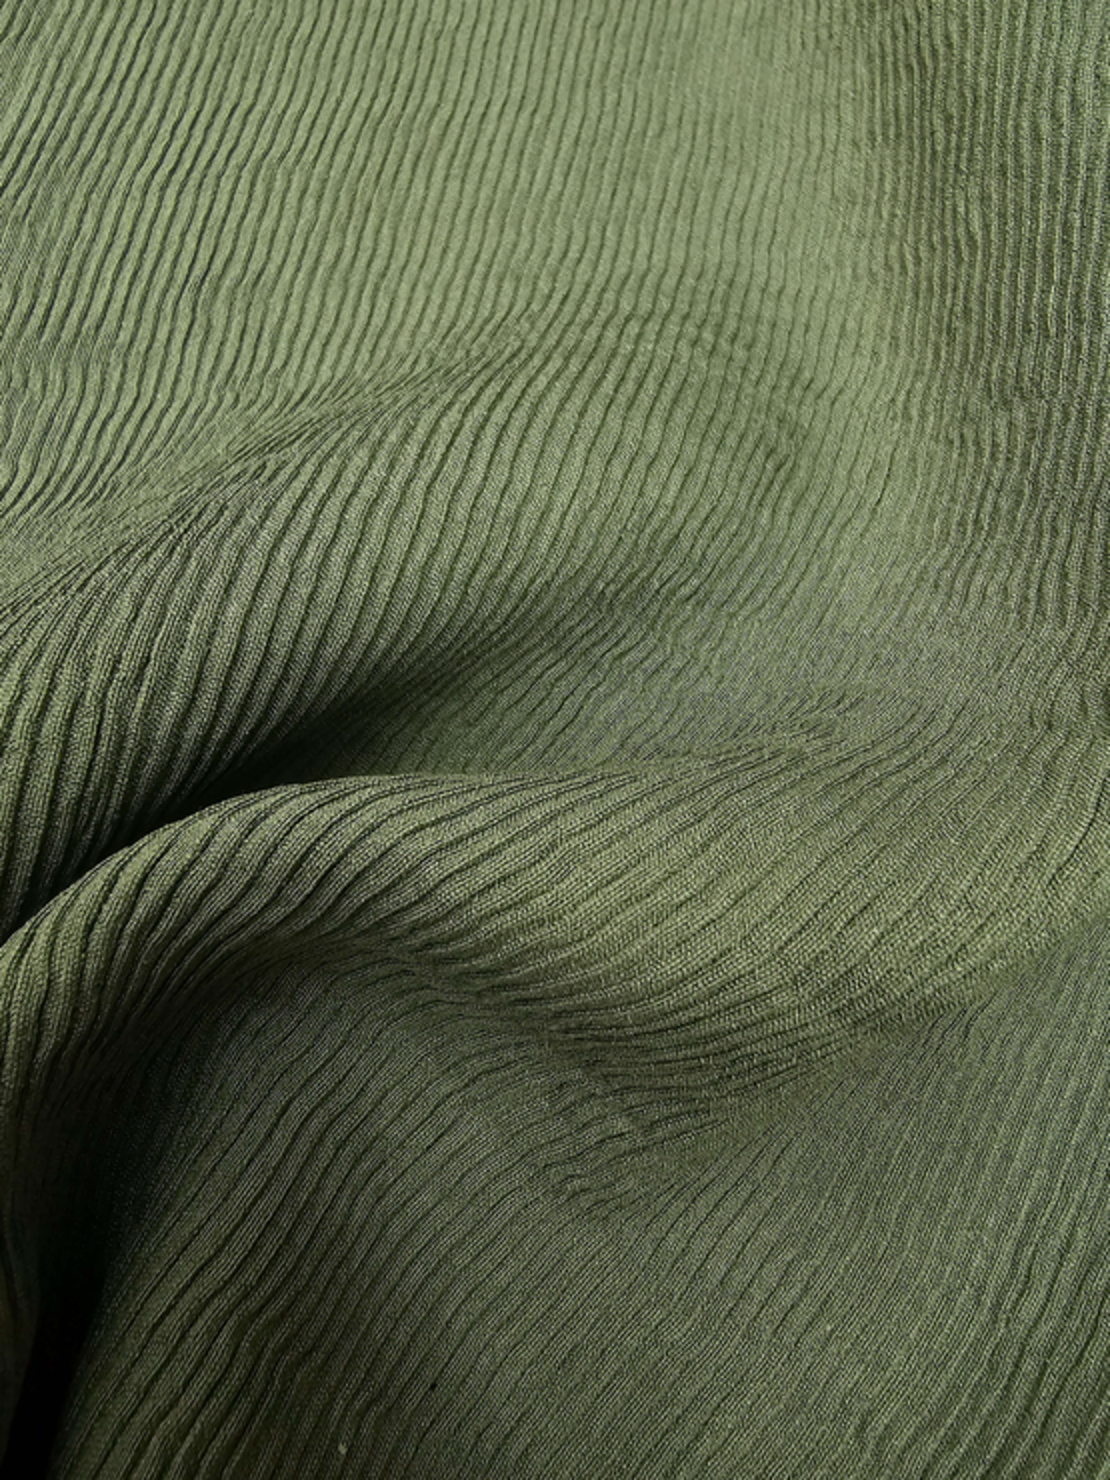 אריג פליסה עדין צבע ירוק זית